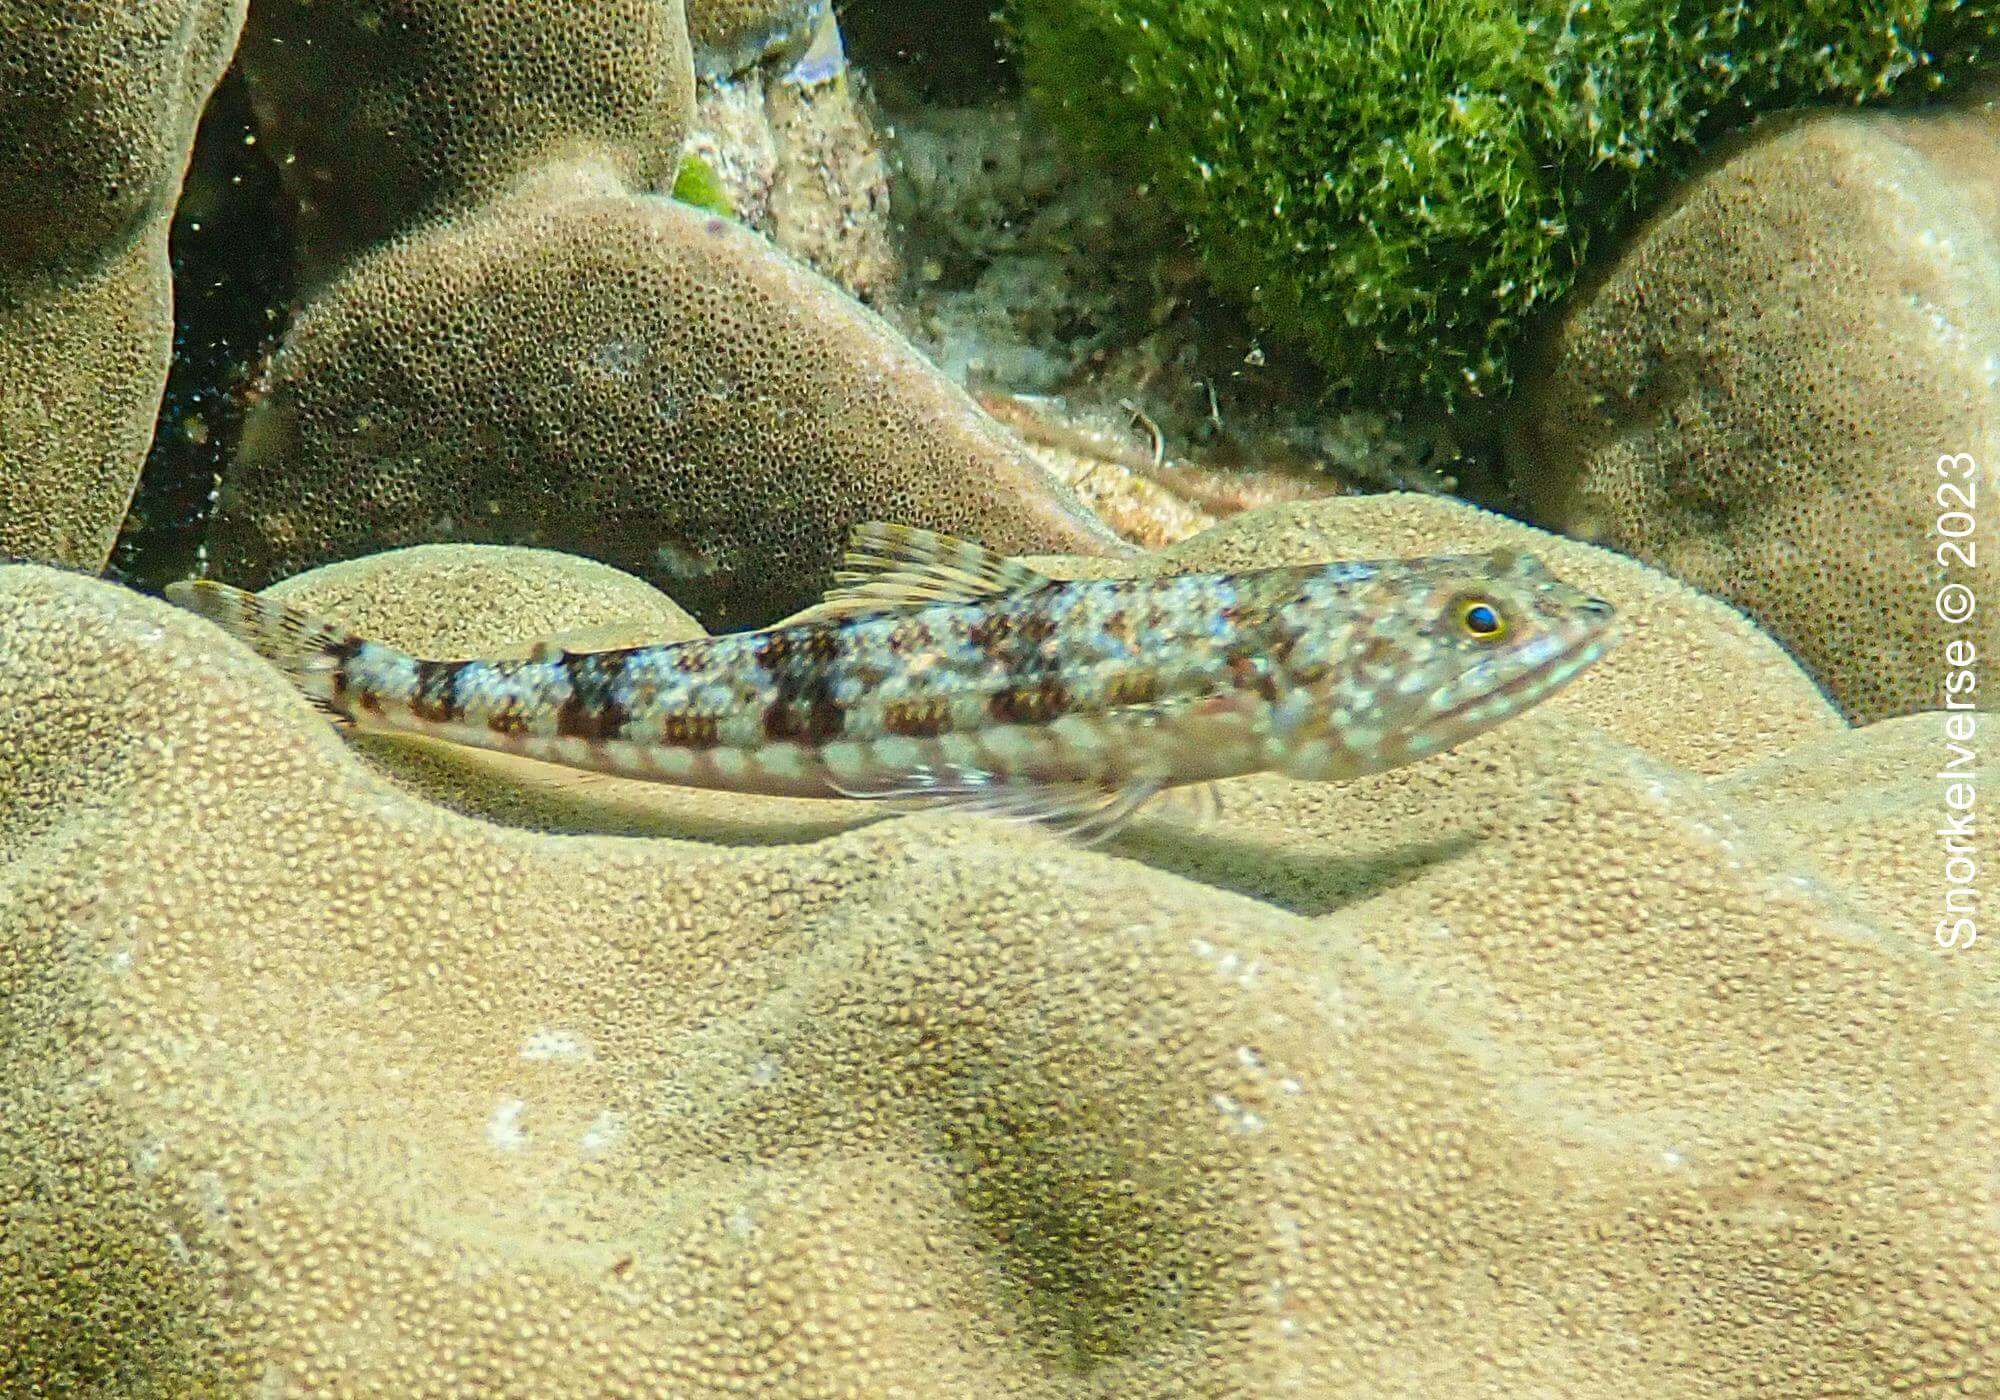 Variegated Lizardfish